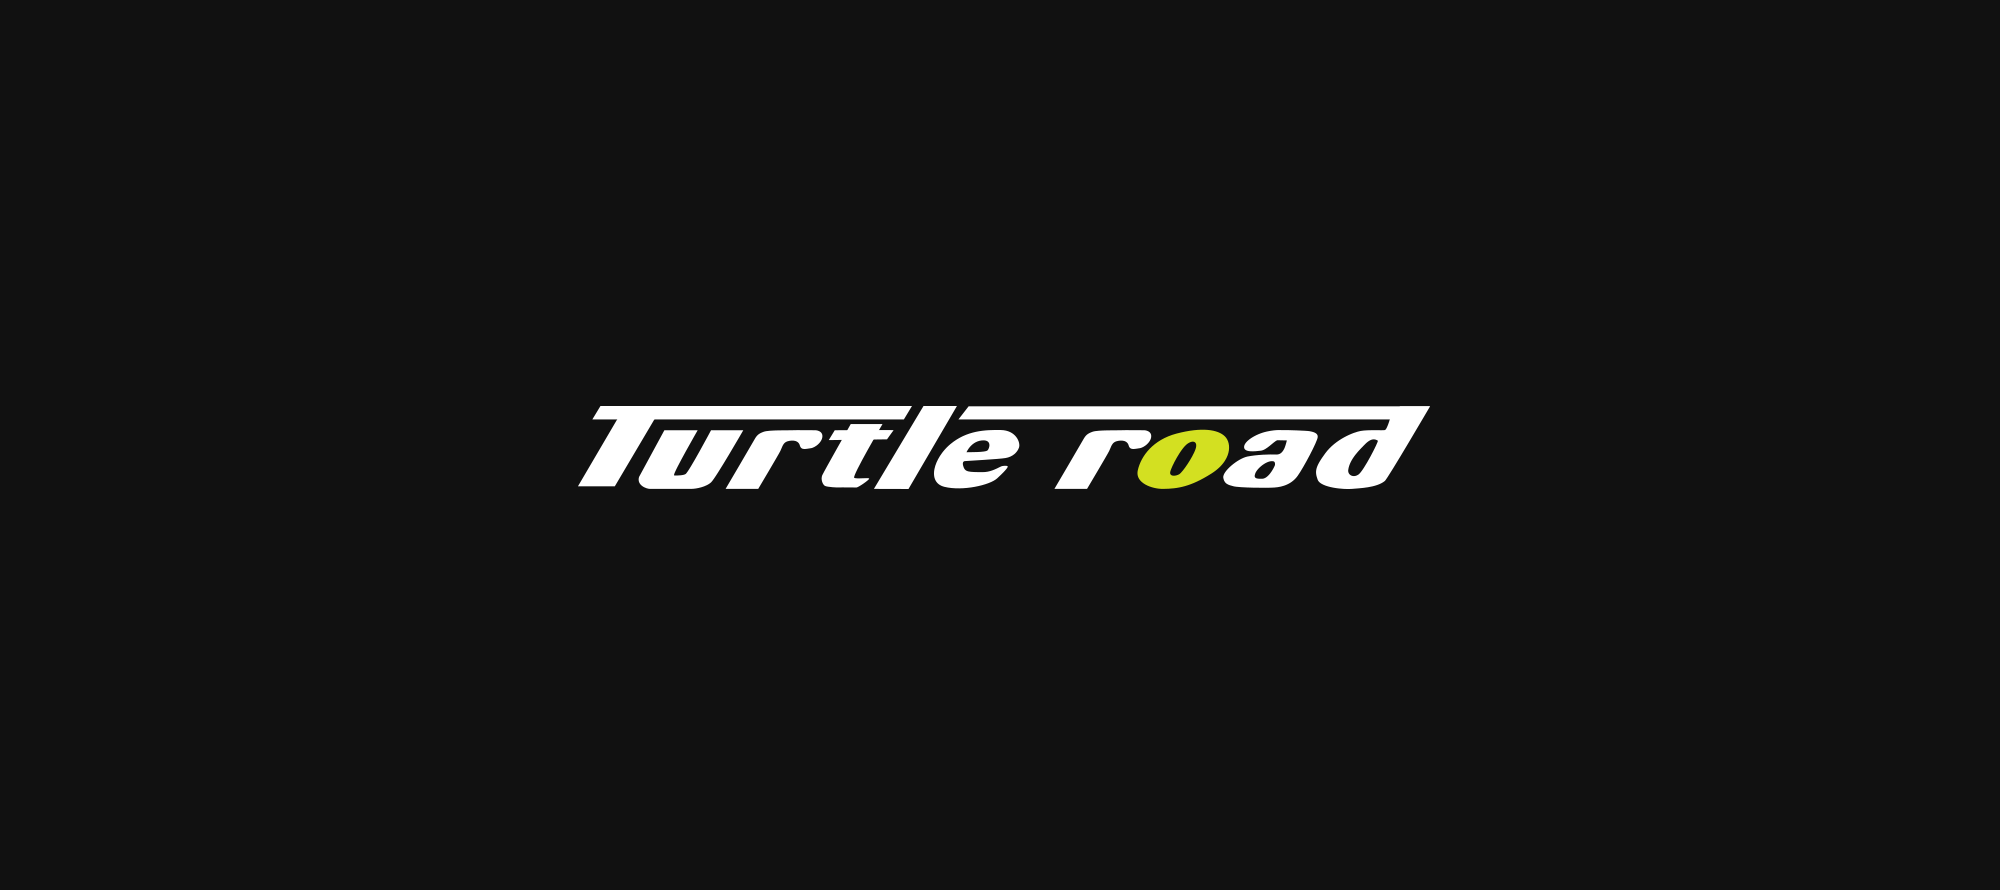 Turtle road